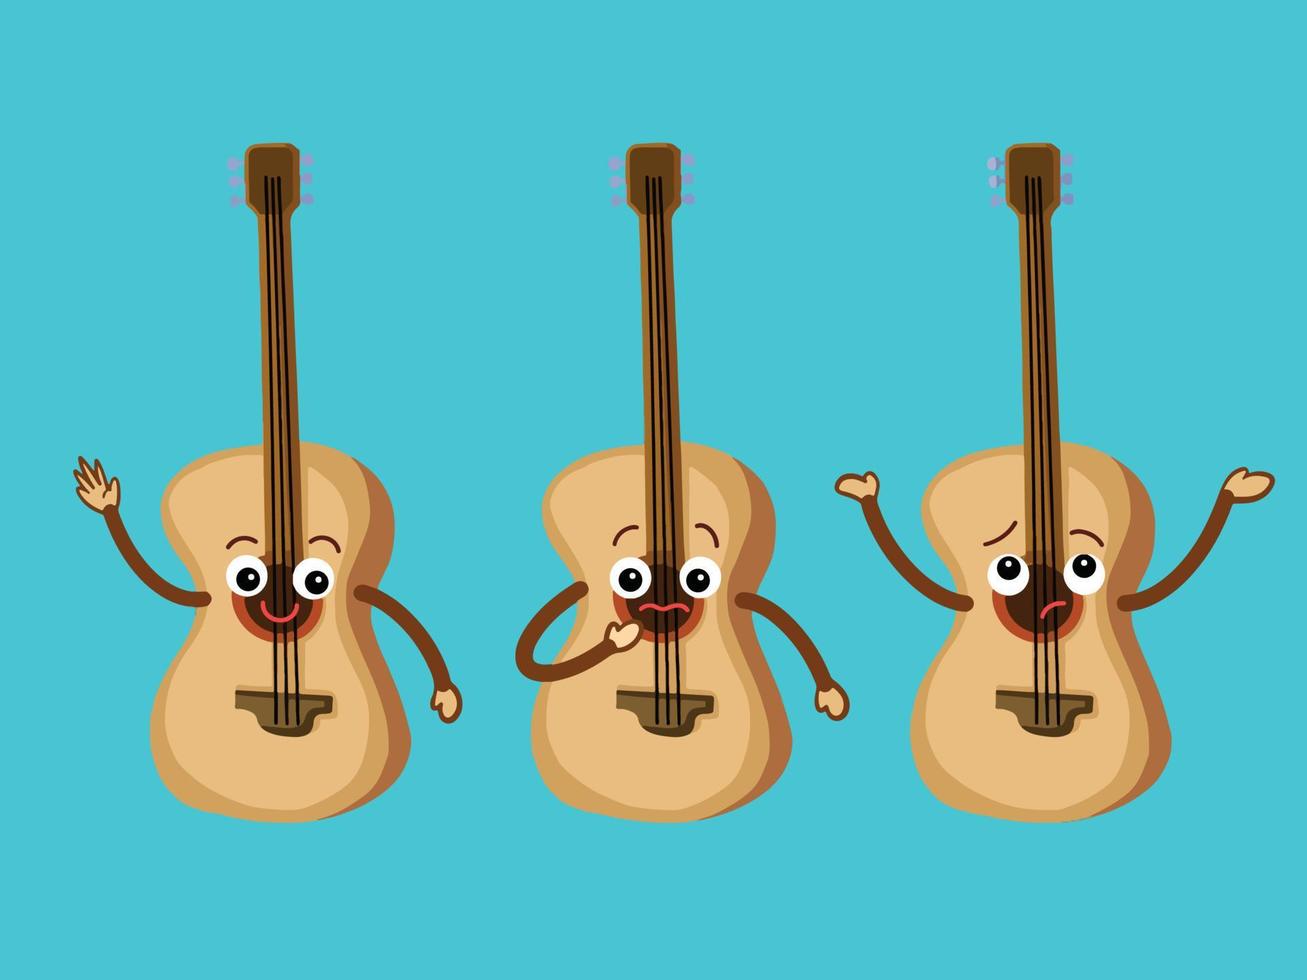 gitarr musikalisk instrument karaktär maskot vektor illustration uppsättning isolerat på enkel blå bakgrund. komisk och tecknad serie styled enkel konst teckning.